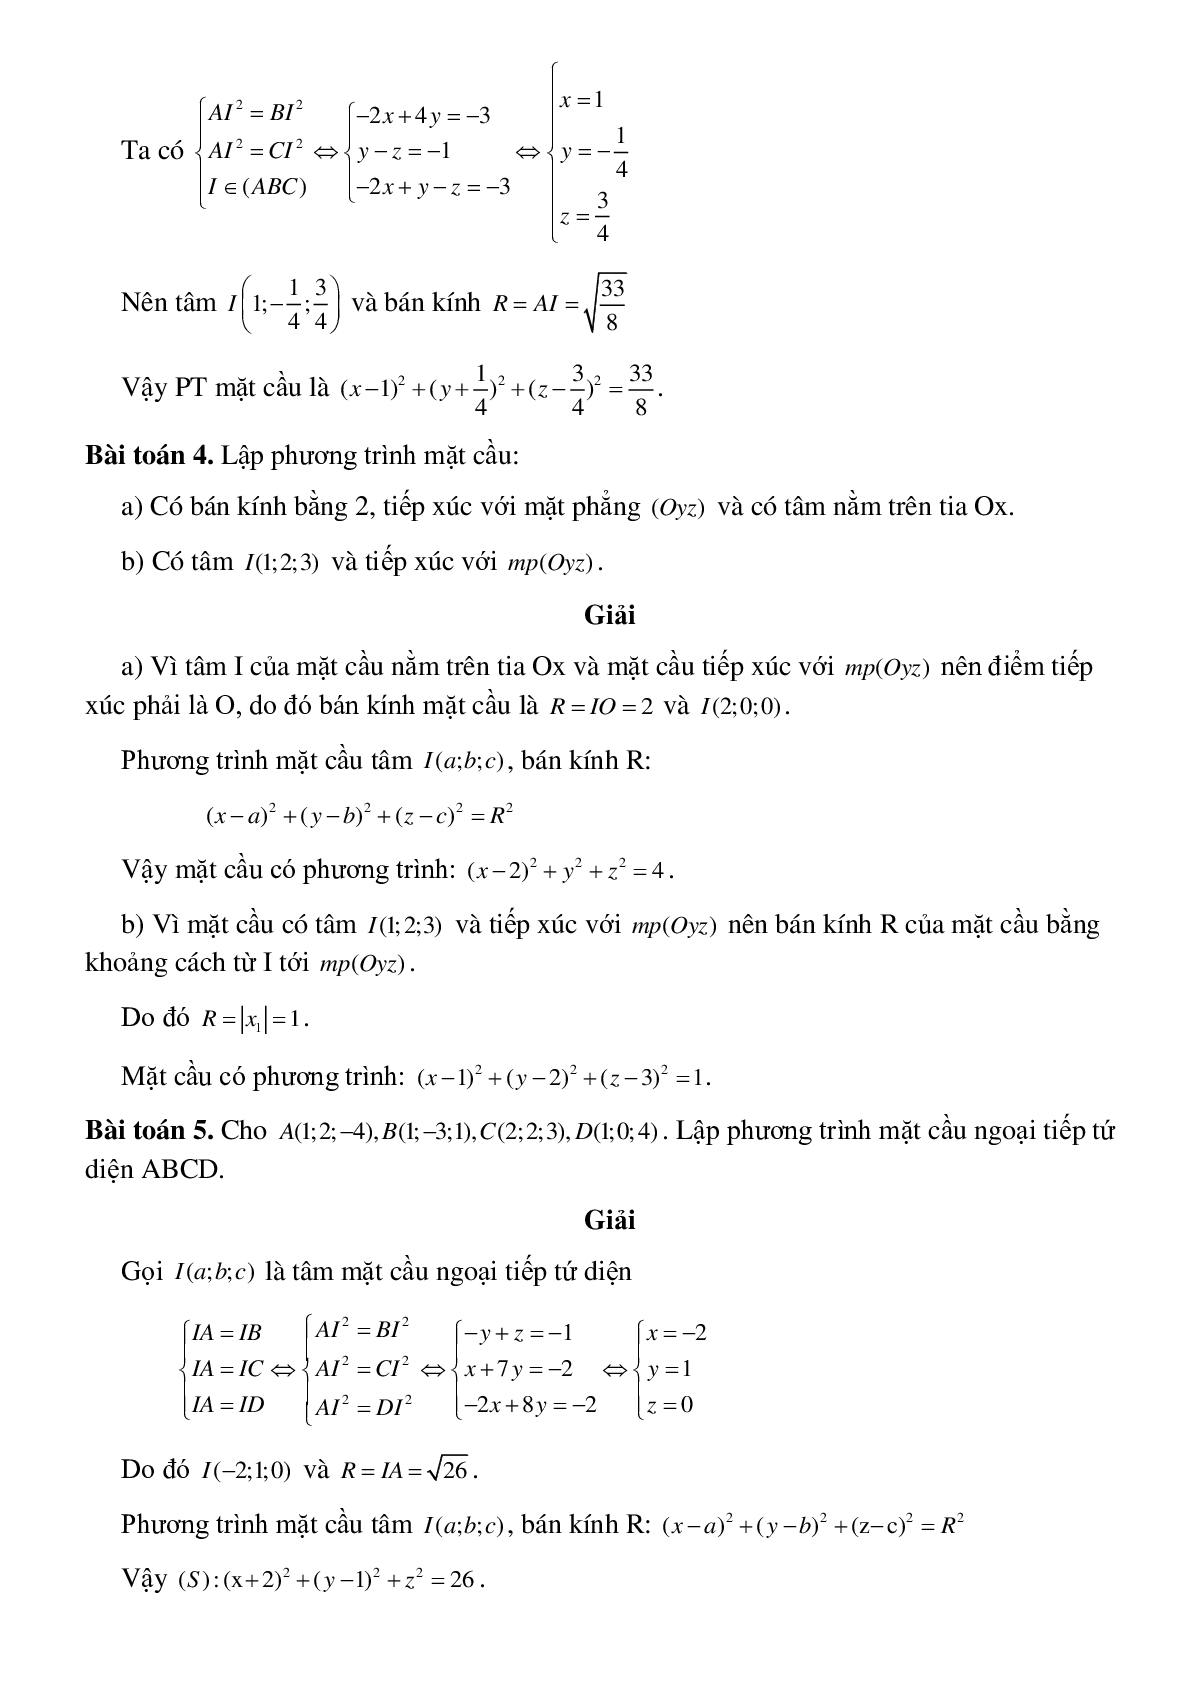 Lập phương trình mặt cầu (trang 3)